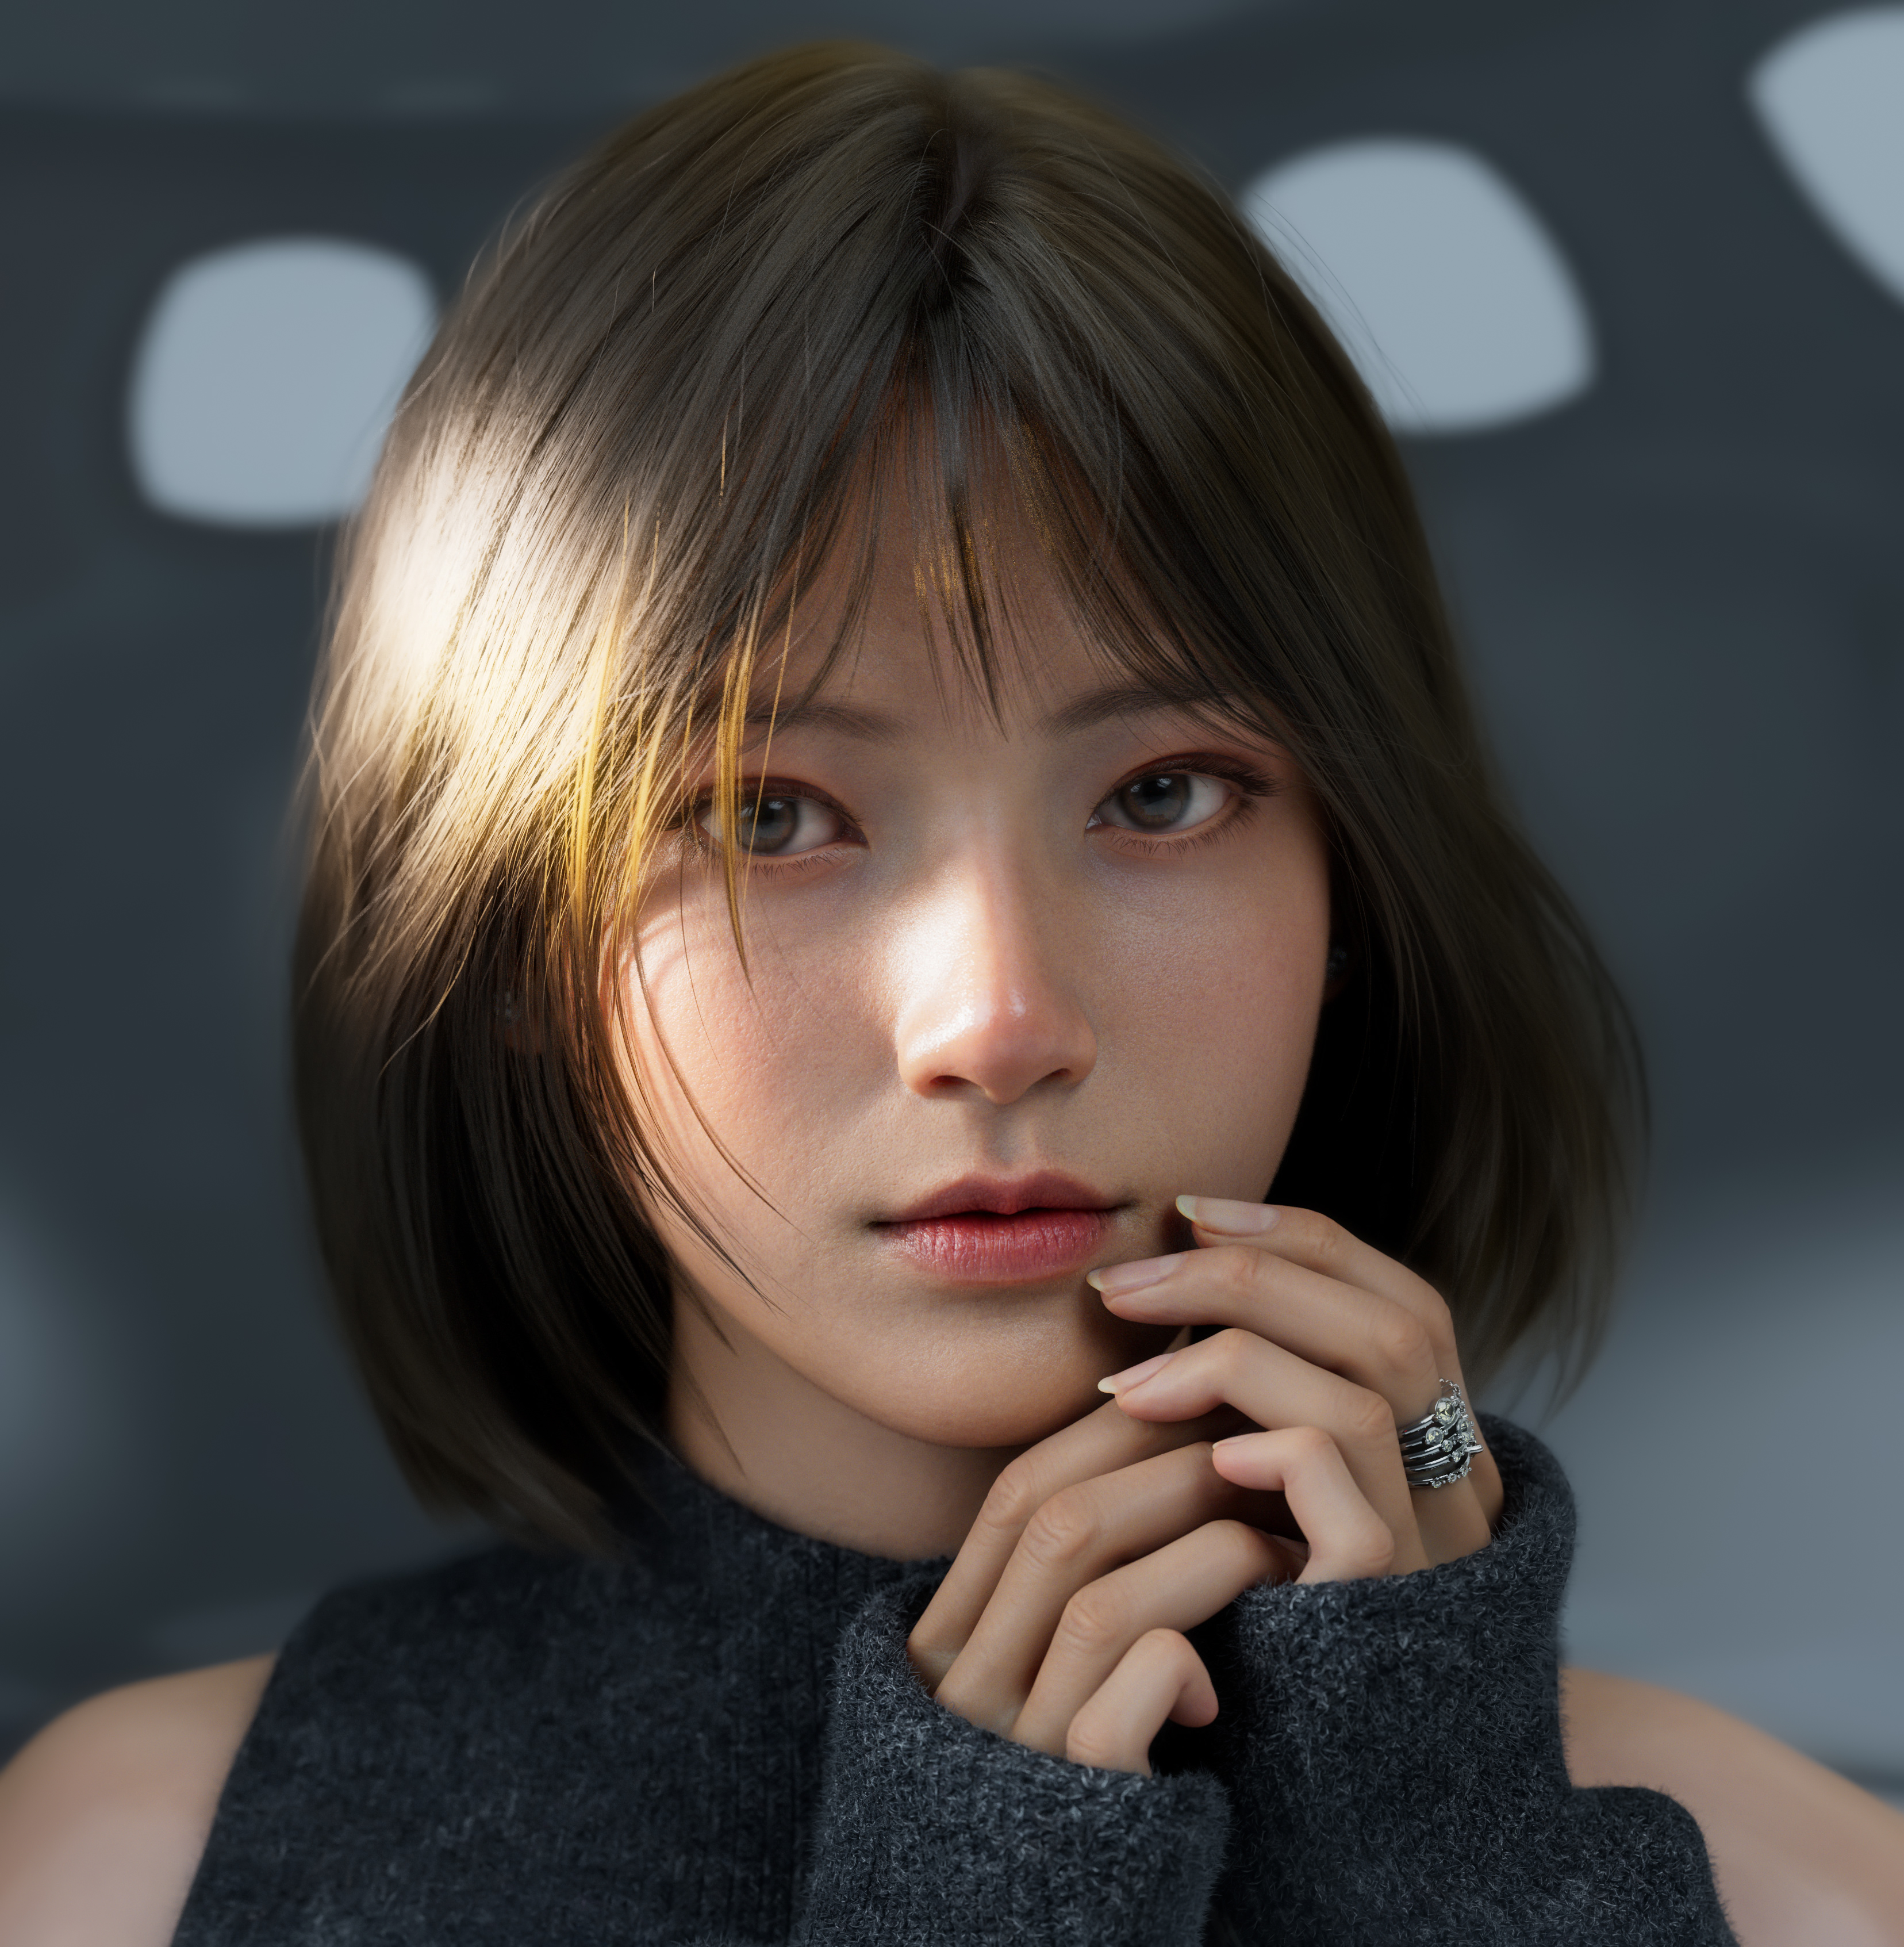 Glow Zhao CGi Brunette Women Asian Portrait Rings Sweater Simple Background 3312x3386